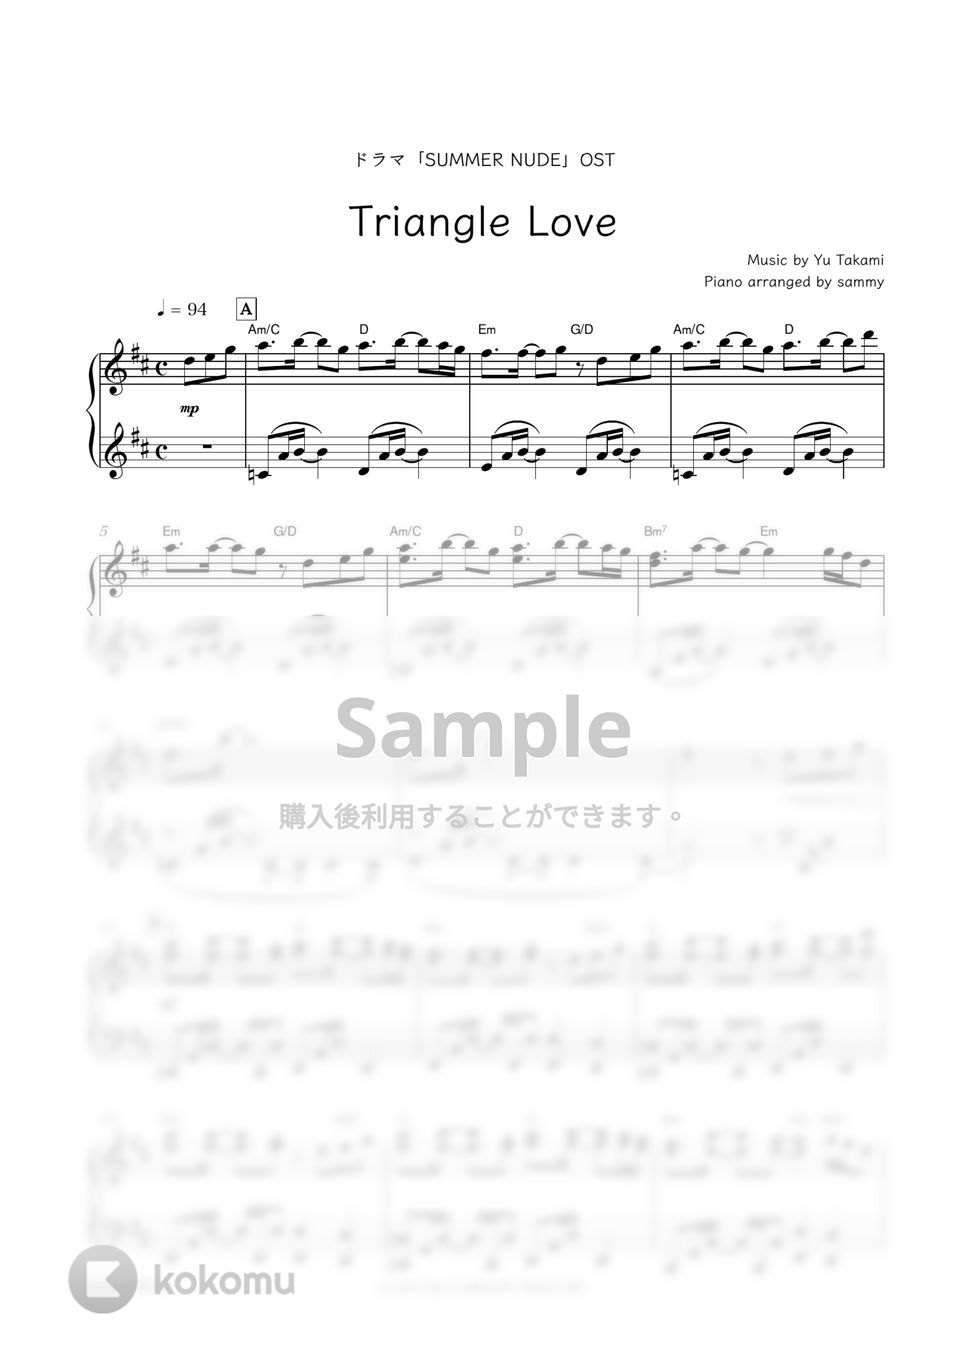 ドラマ『SUMMER NUDE』OST - Triangle Love by sammy